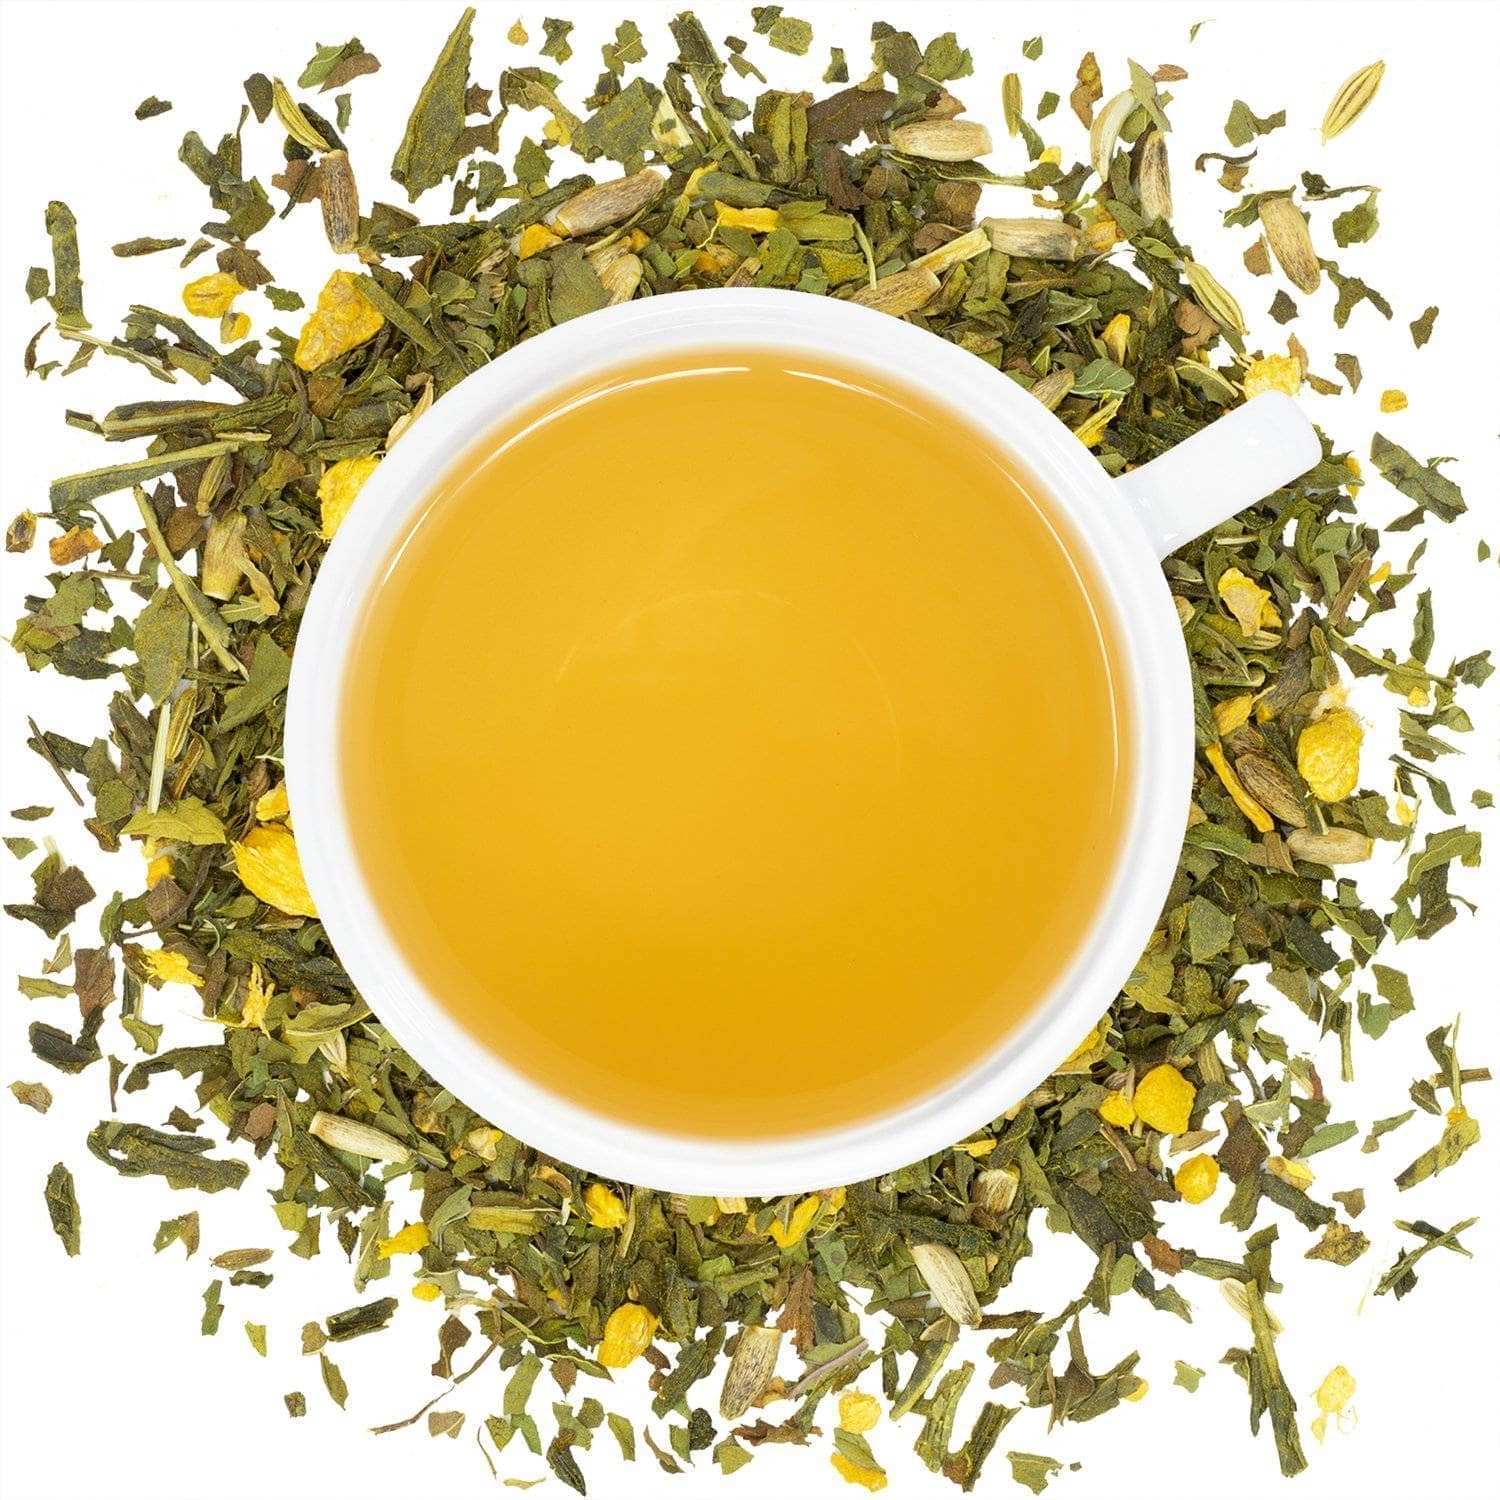 Green tea for hangover relief